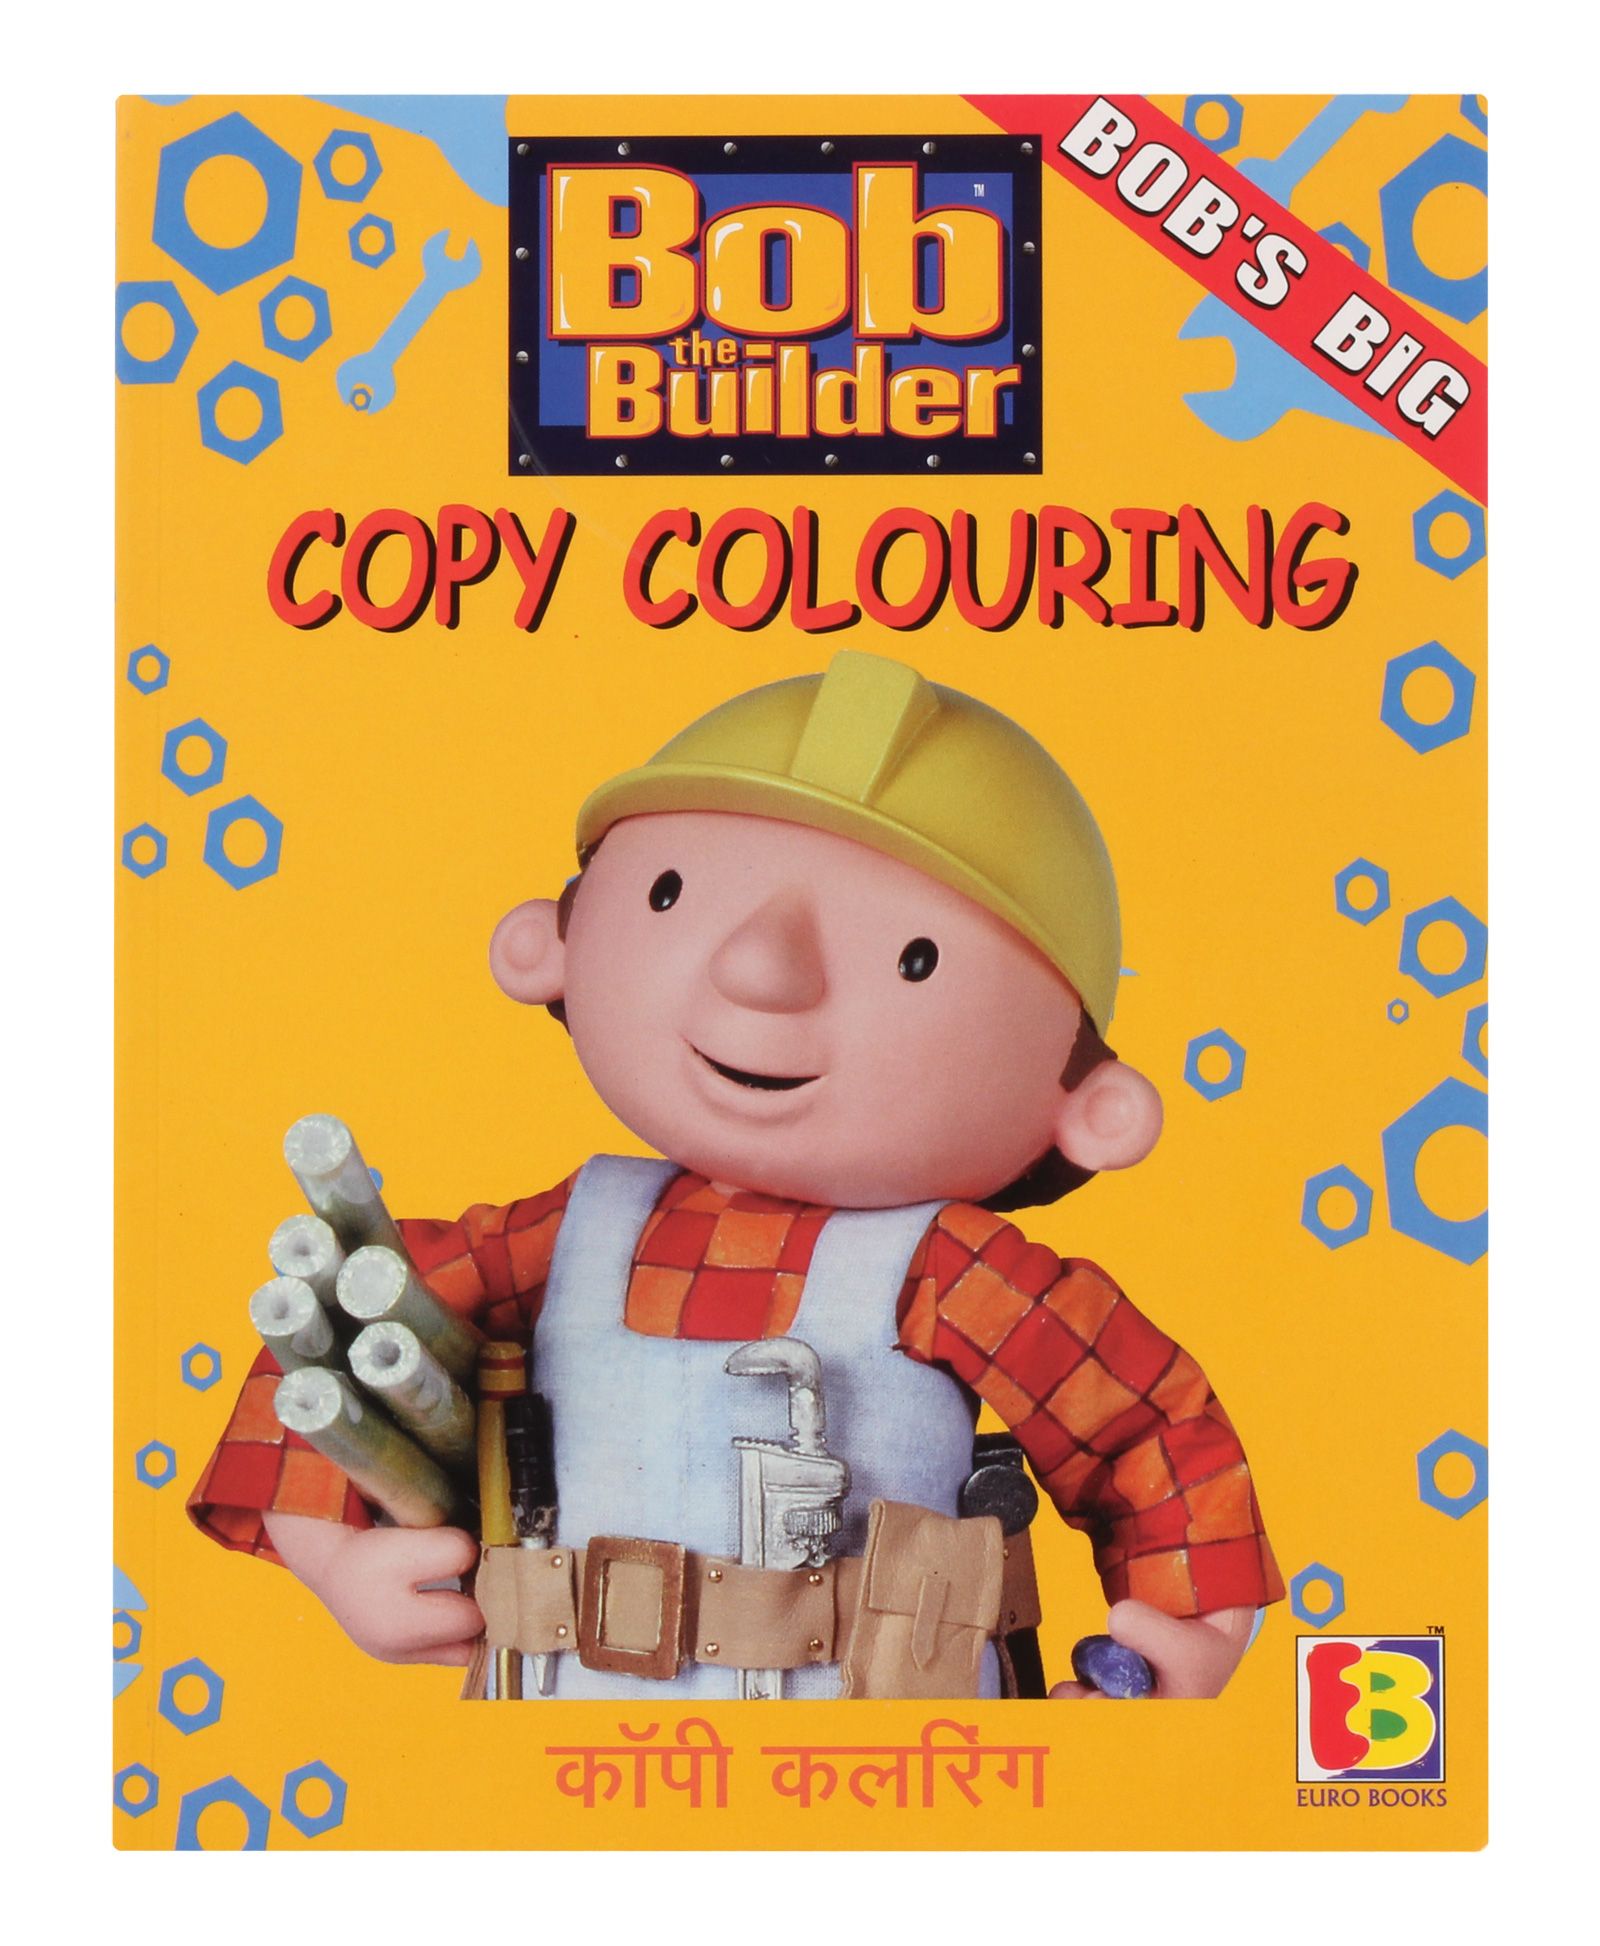 Bobs Big Bob the Builder - Copy Coloring Book